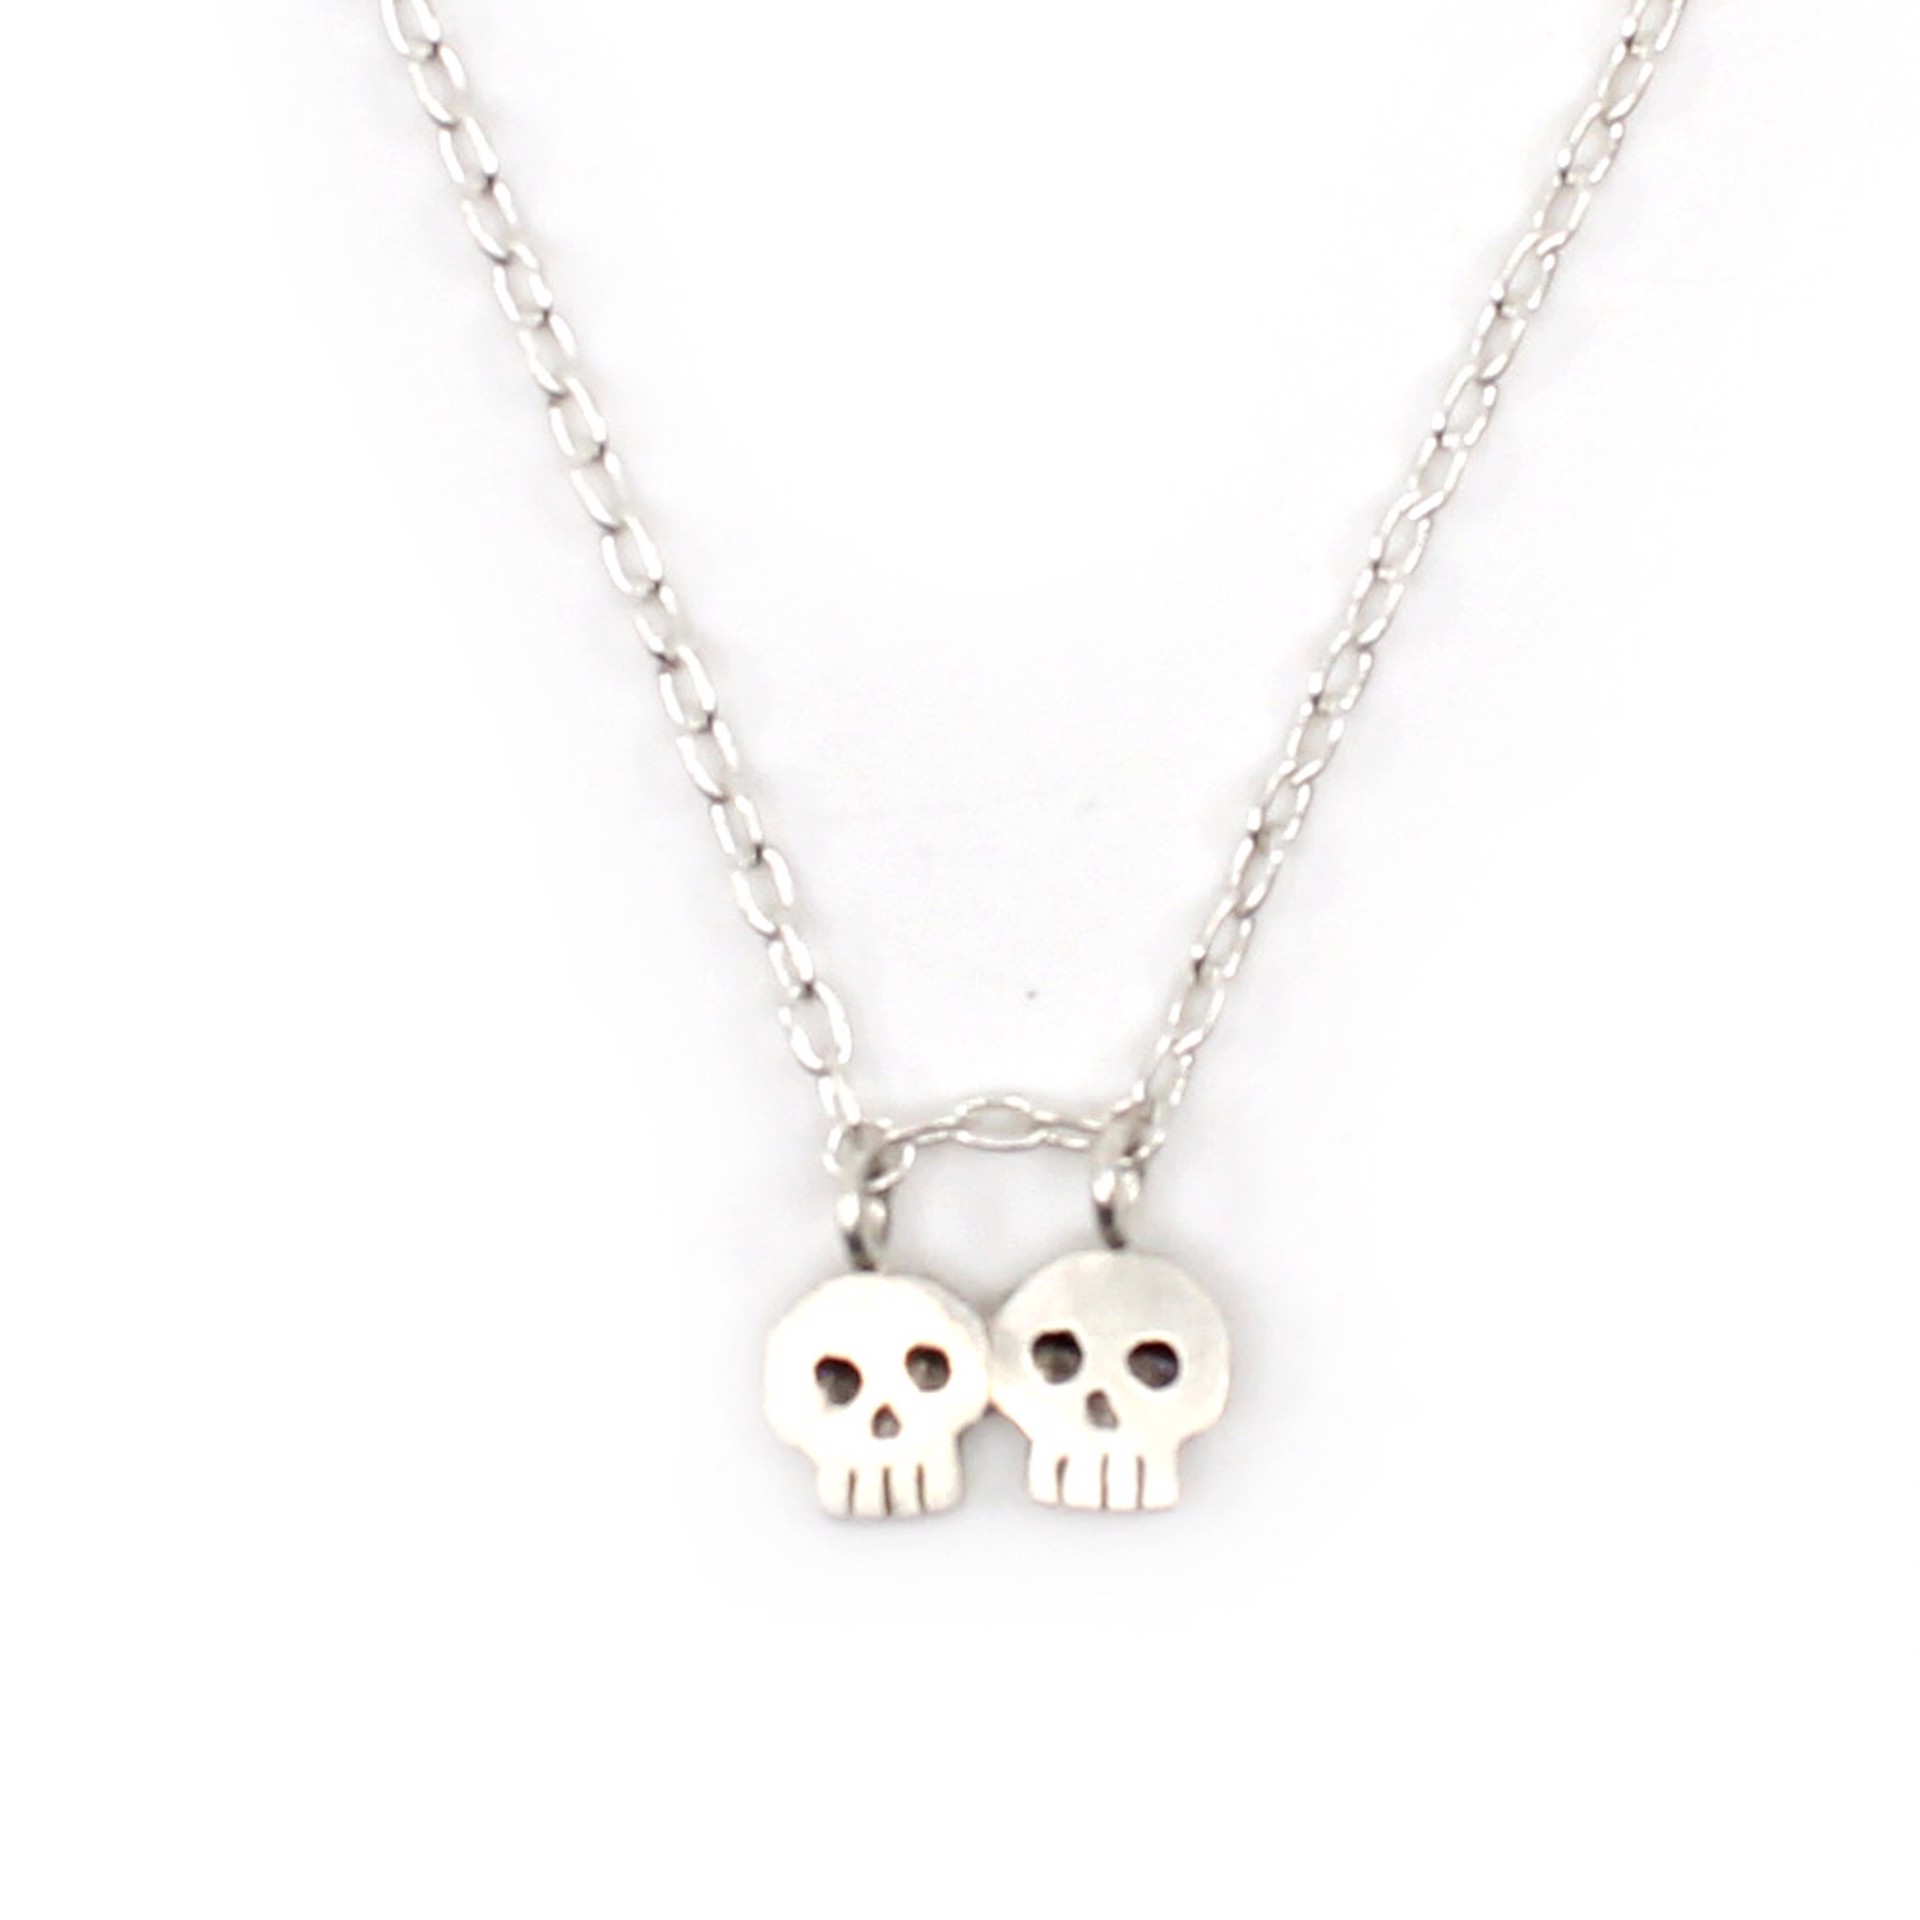 Skull Buddies Necklace by Susan Elnora